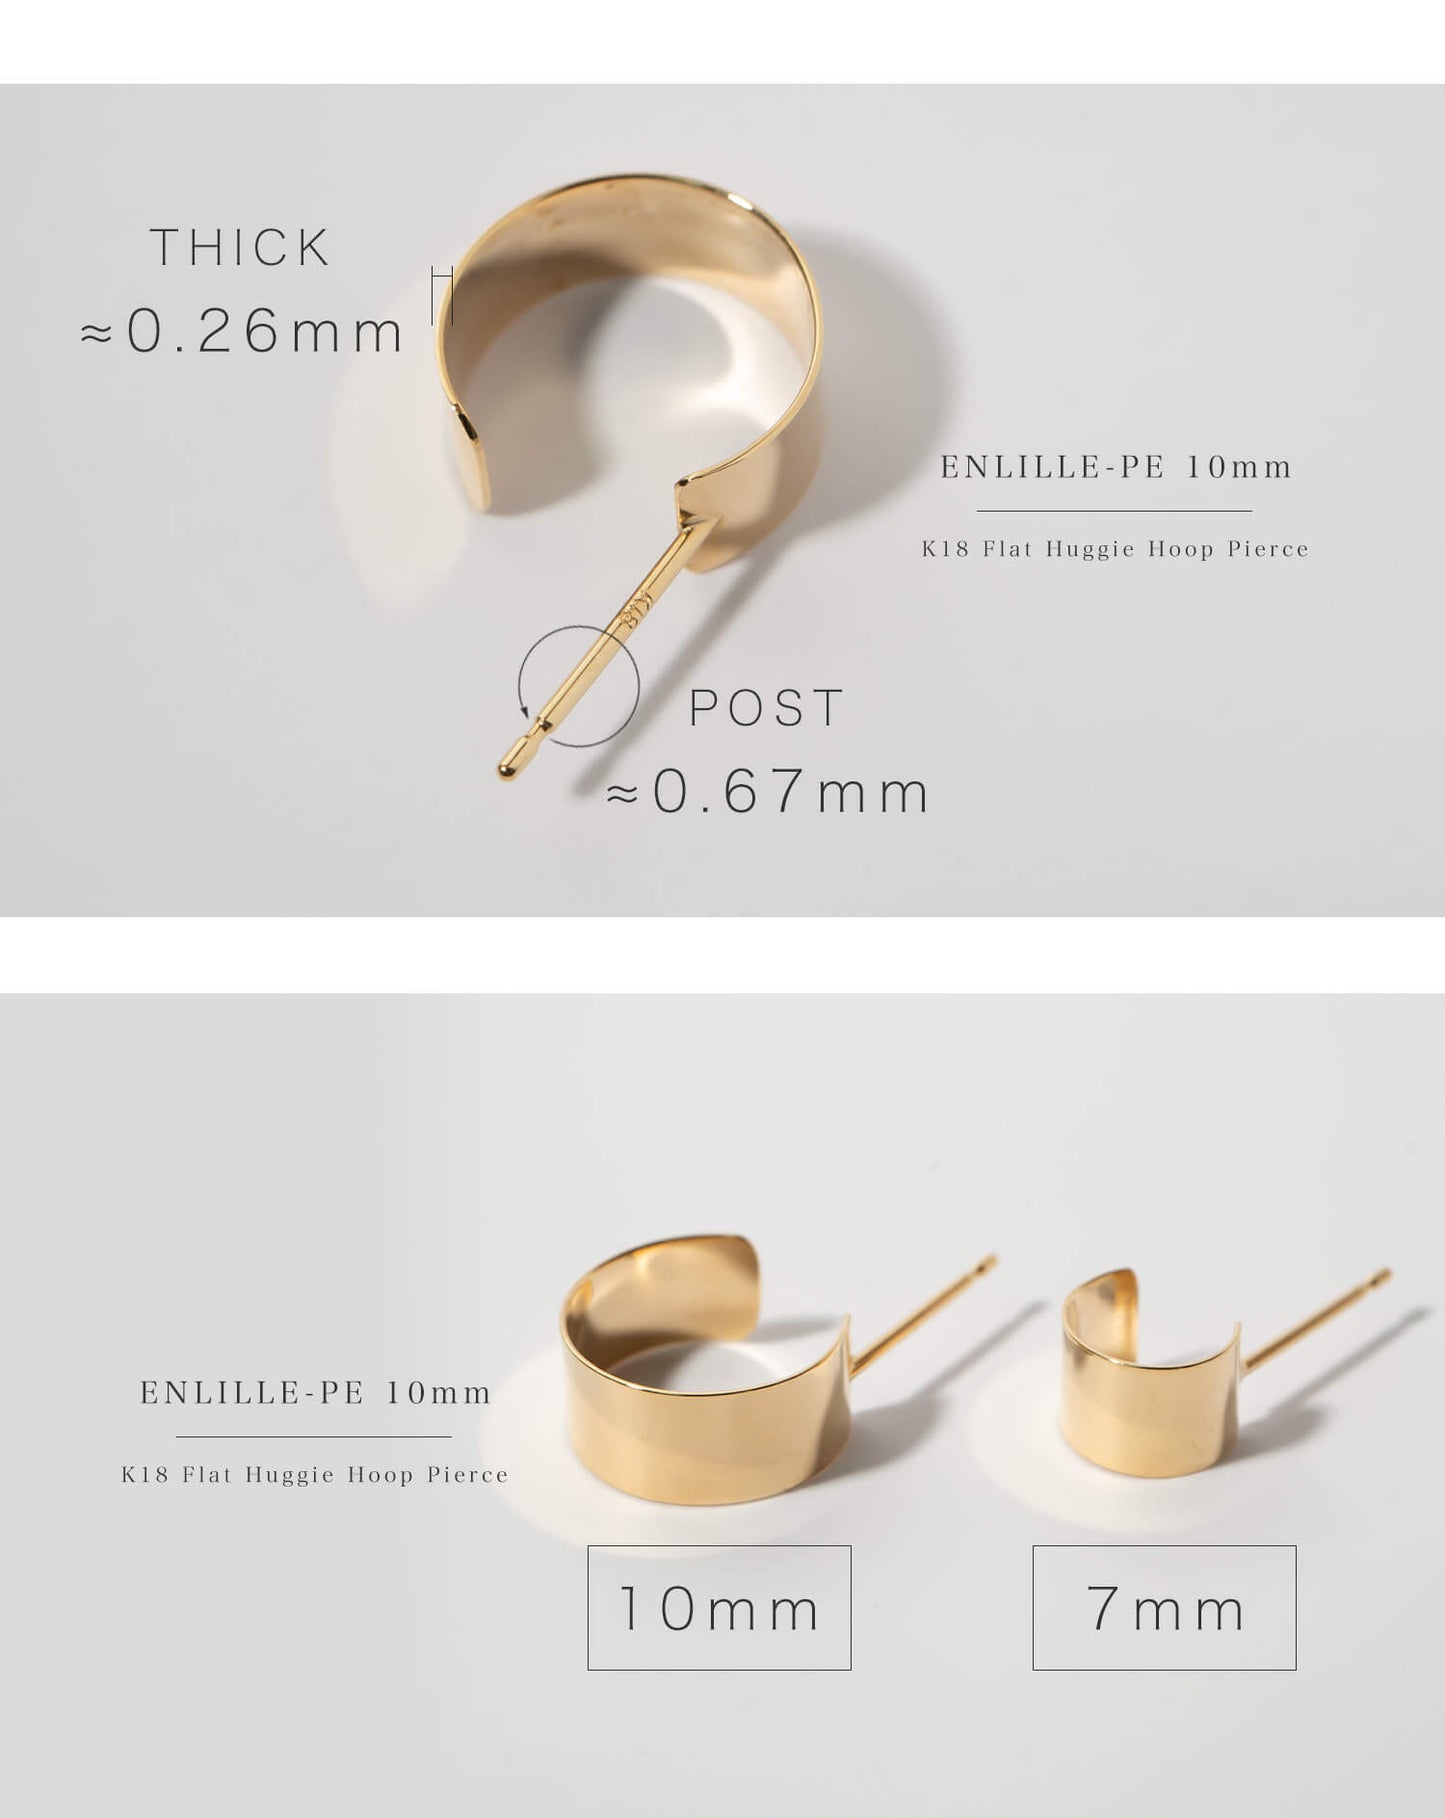 Flat Huggie Hoop Earrings | ENLILLE-PE 10mm